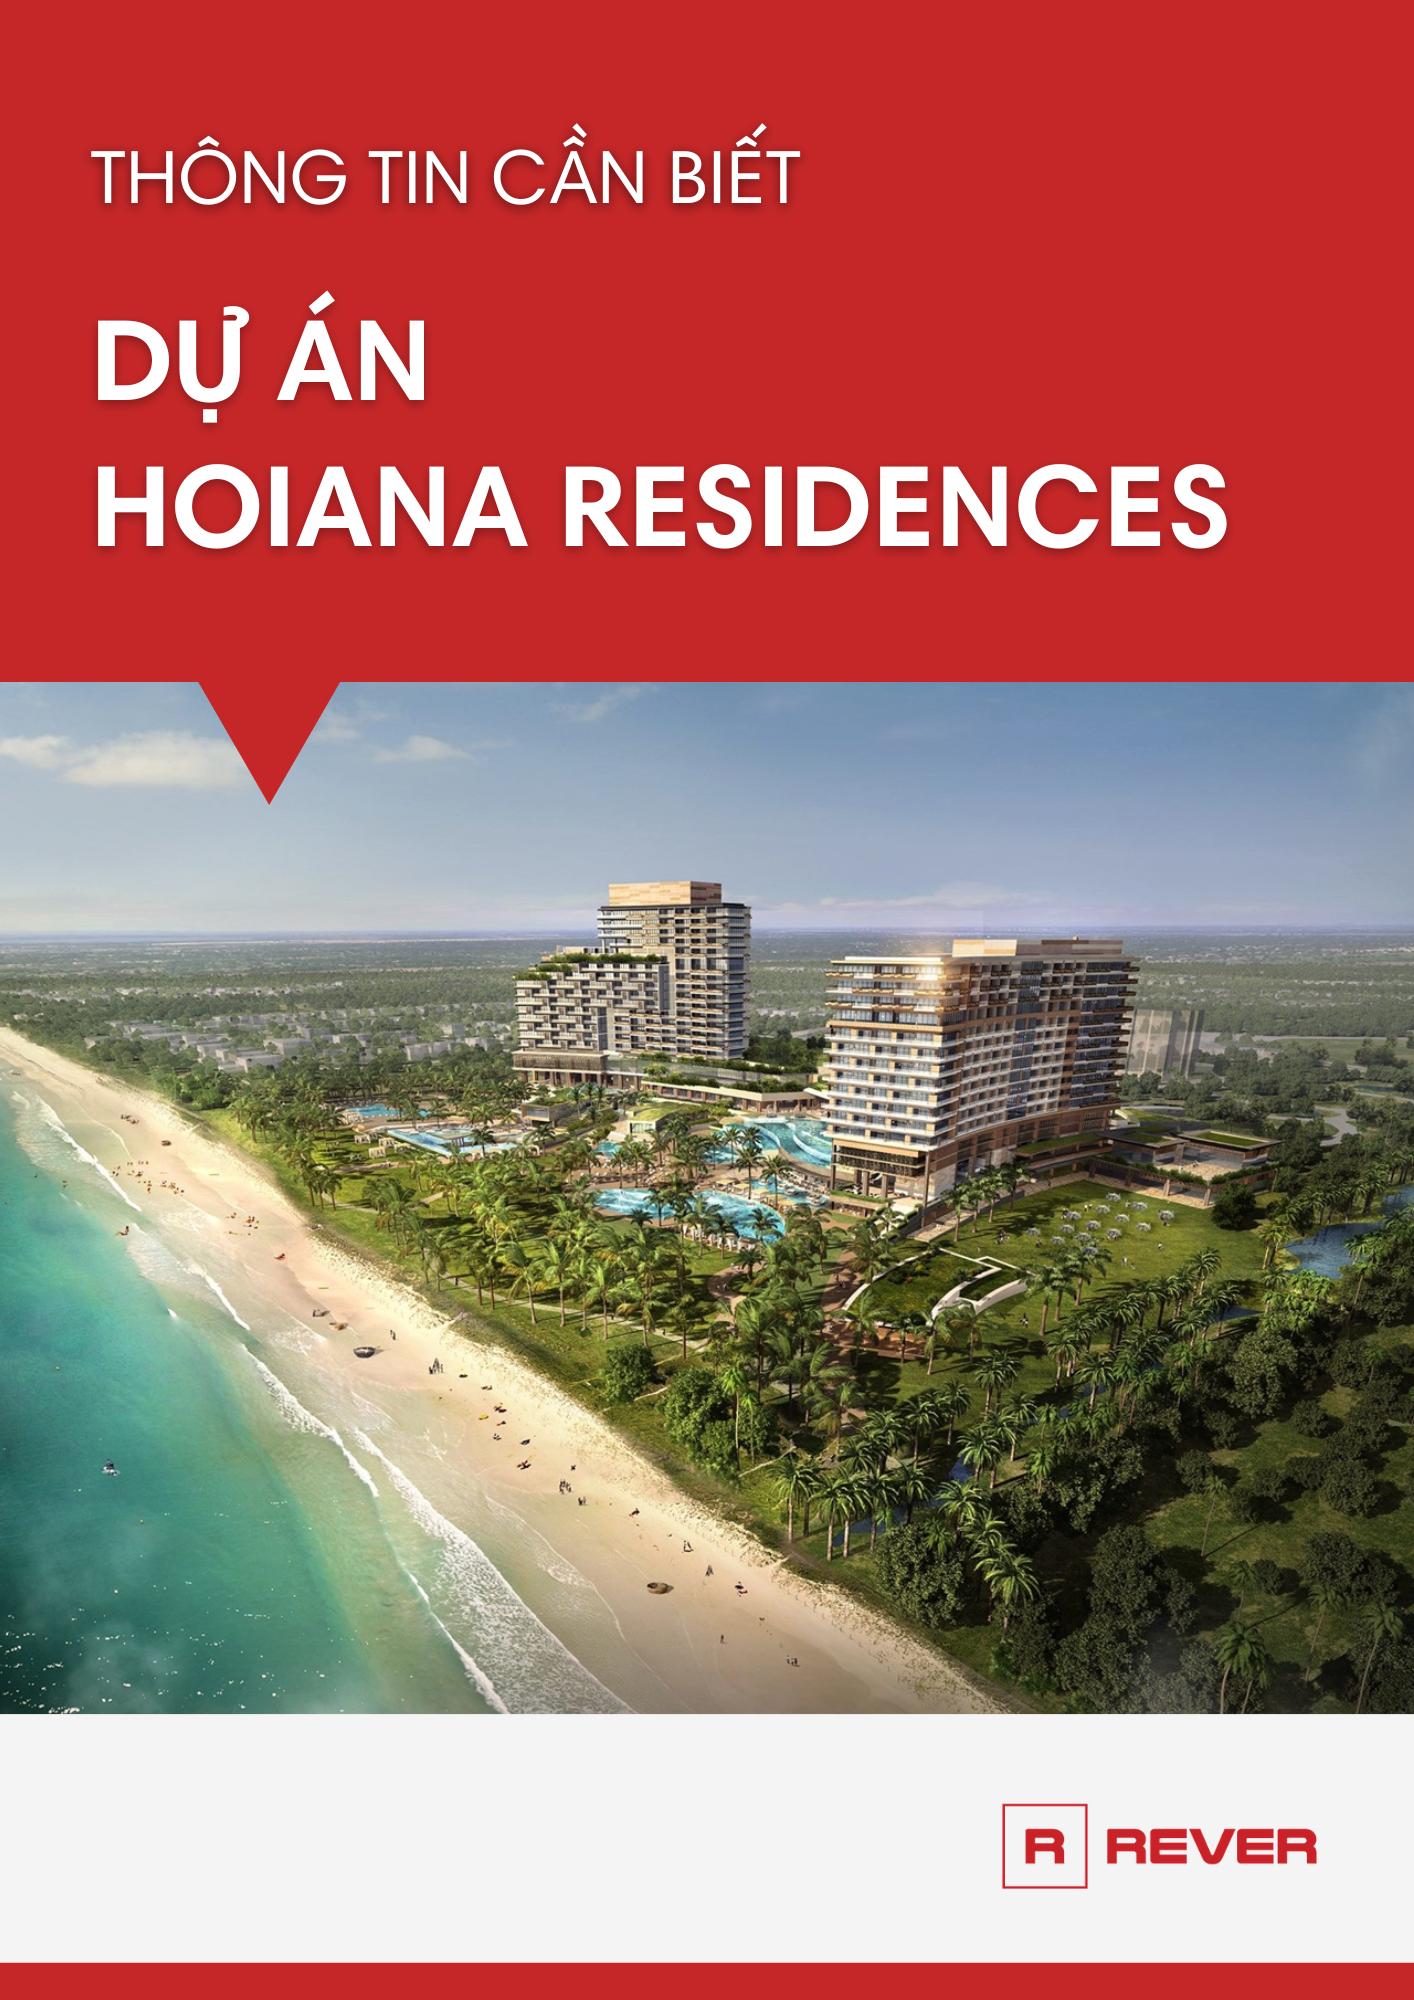 Thông tin chi tiết dự án Hoiana Residences